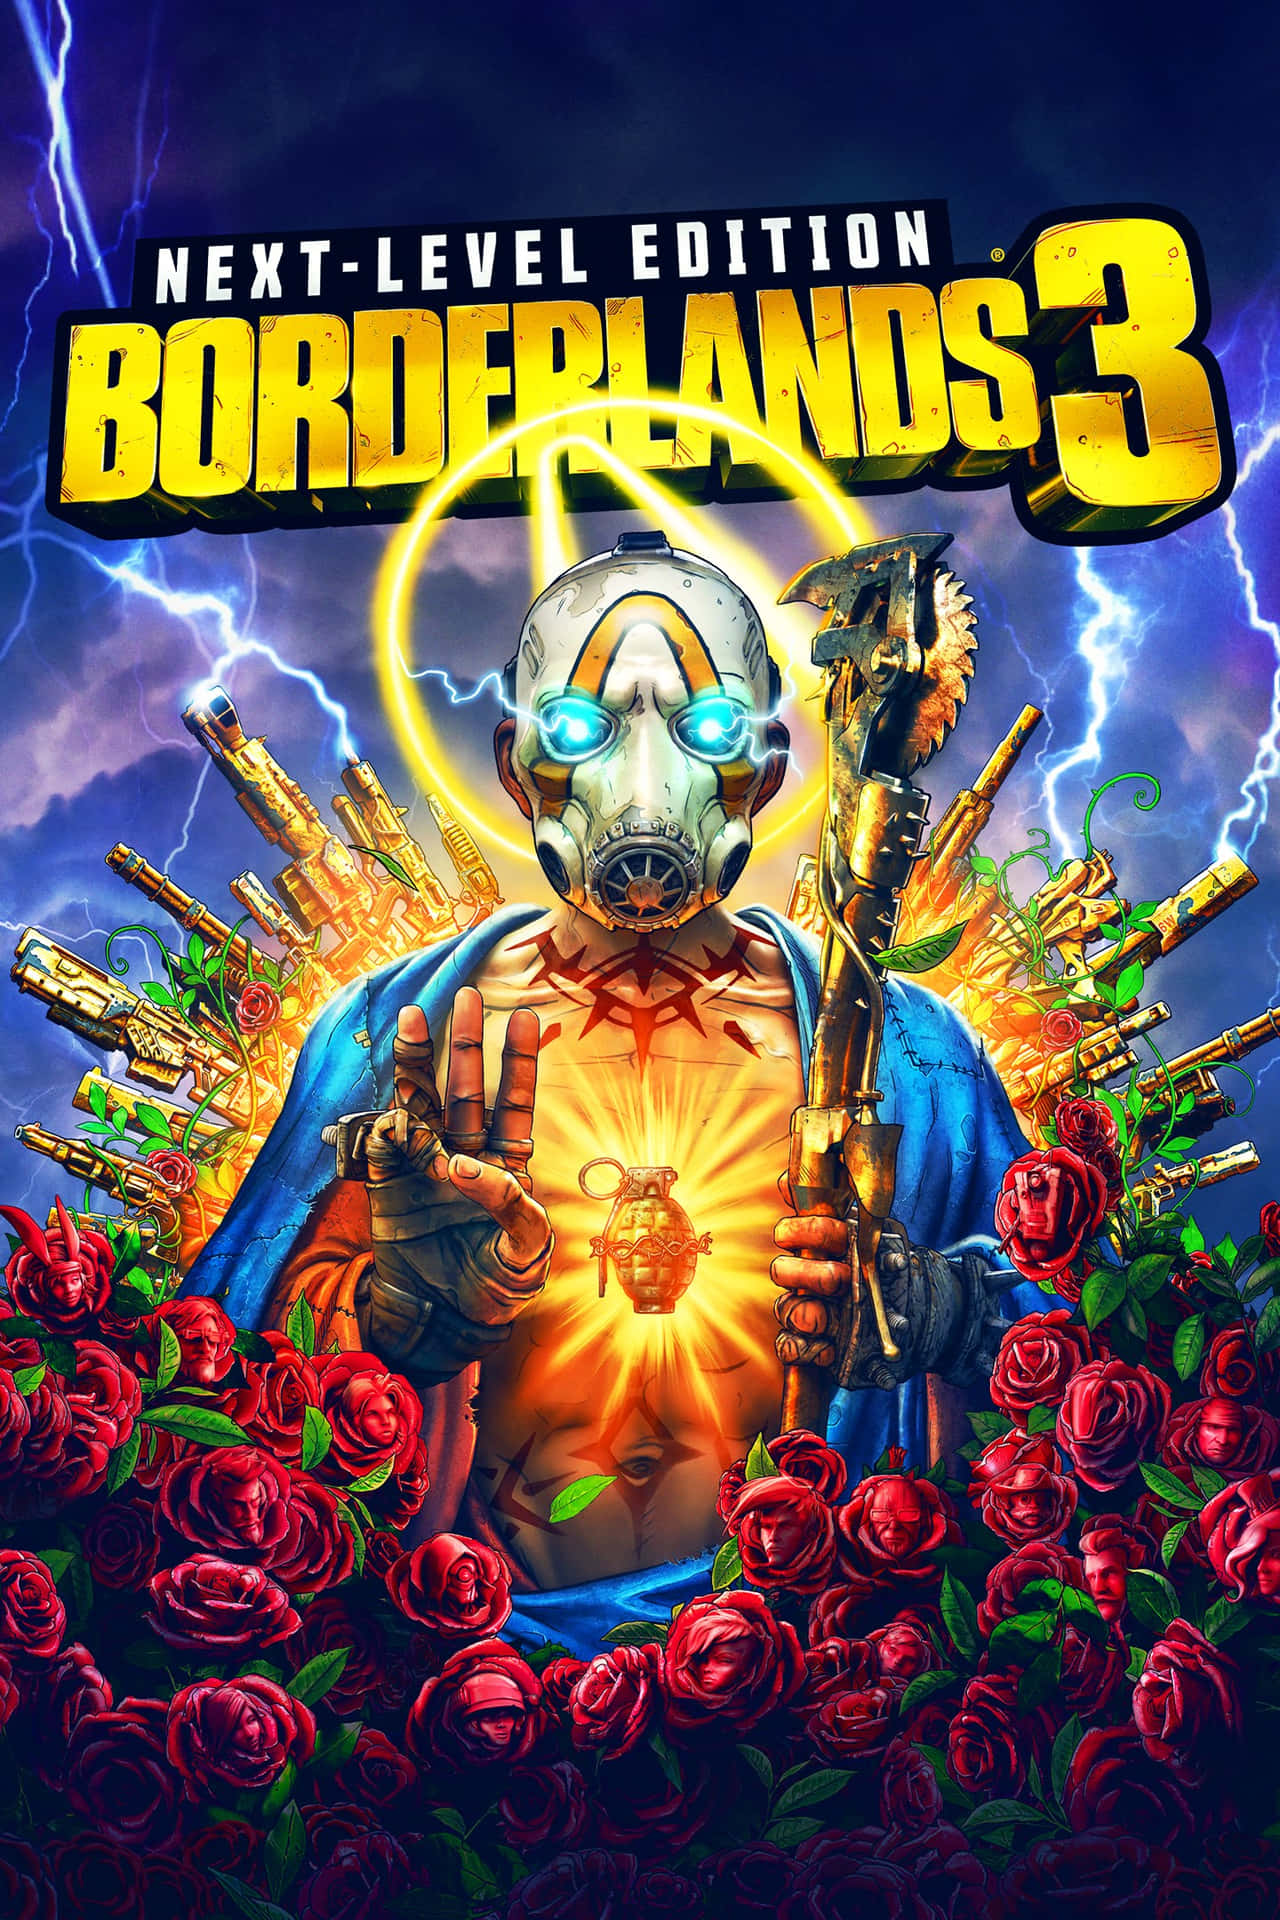 Nyd Borderlands 3 på Pixel 3XL